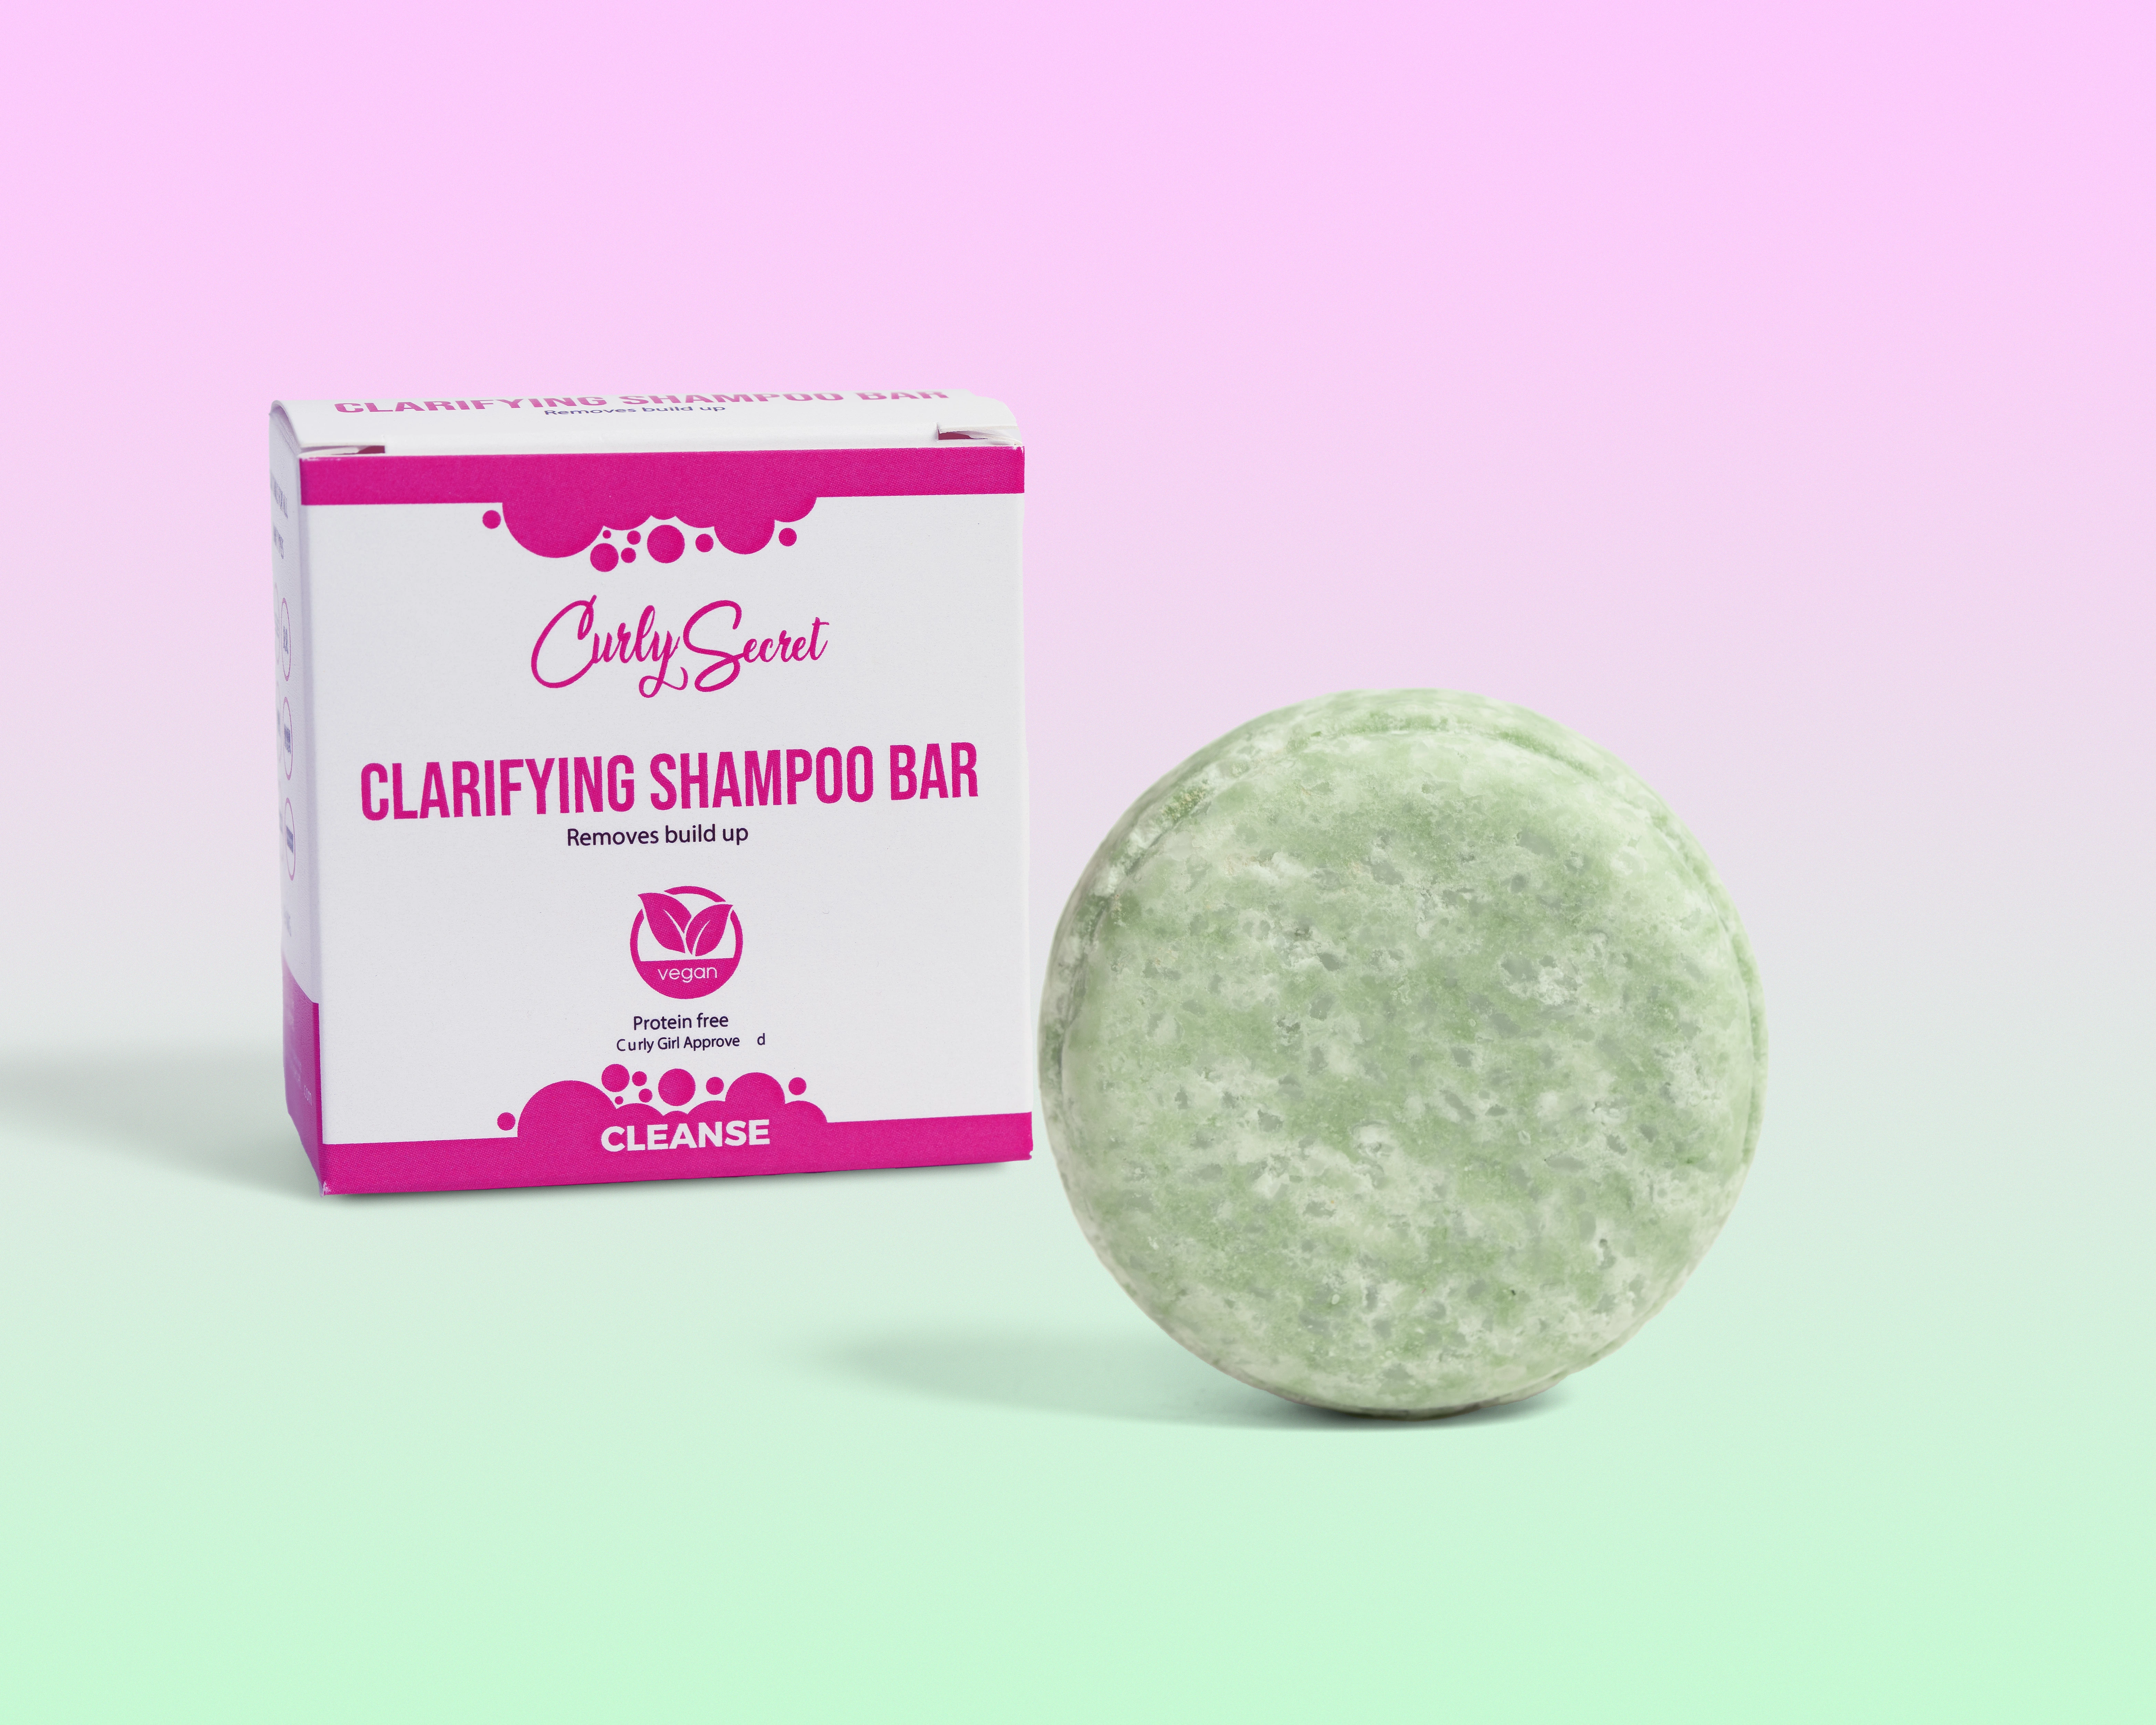 Curly Secret Clarifying Shampoo Bar